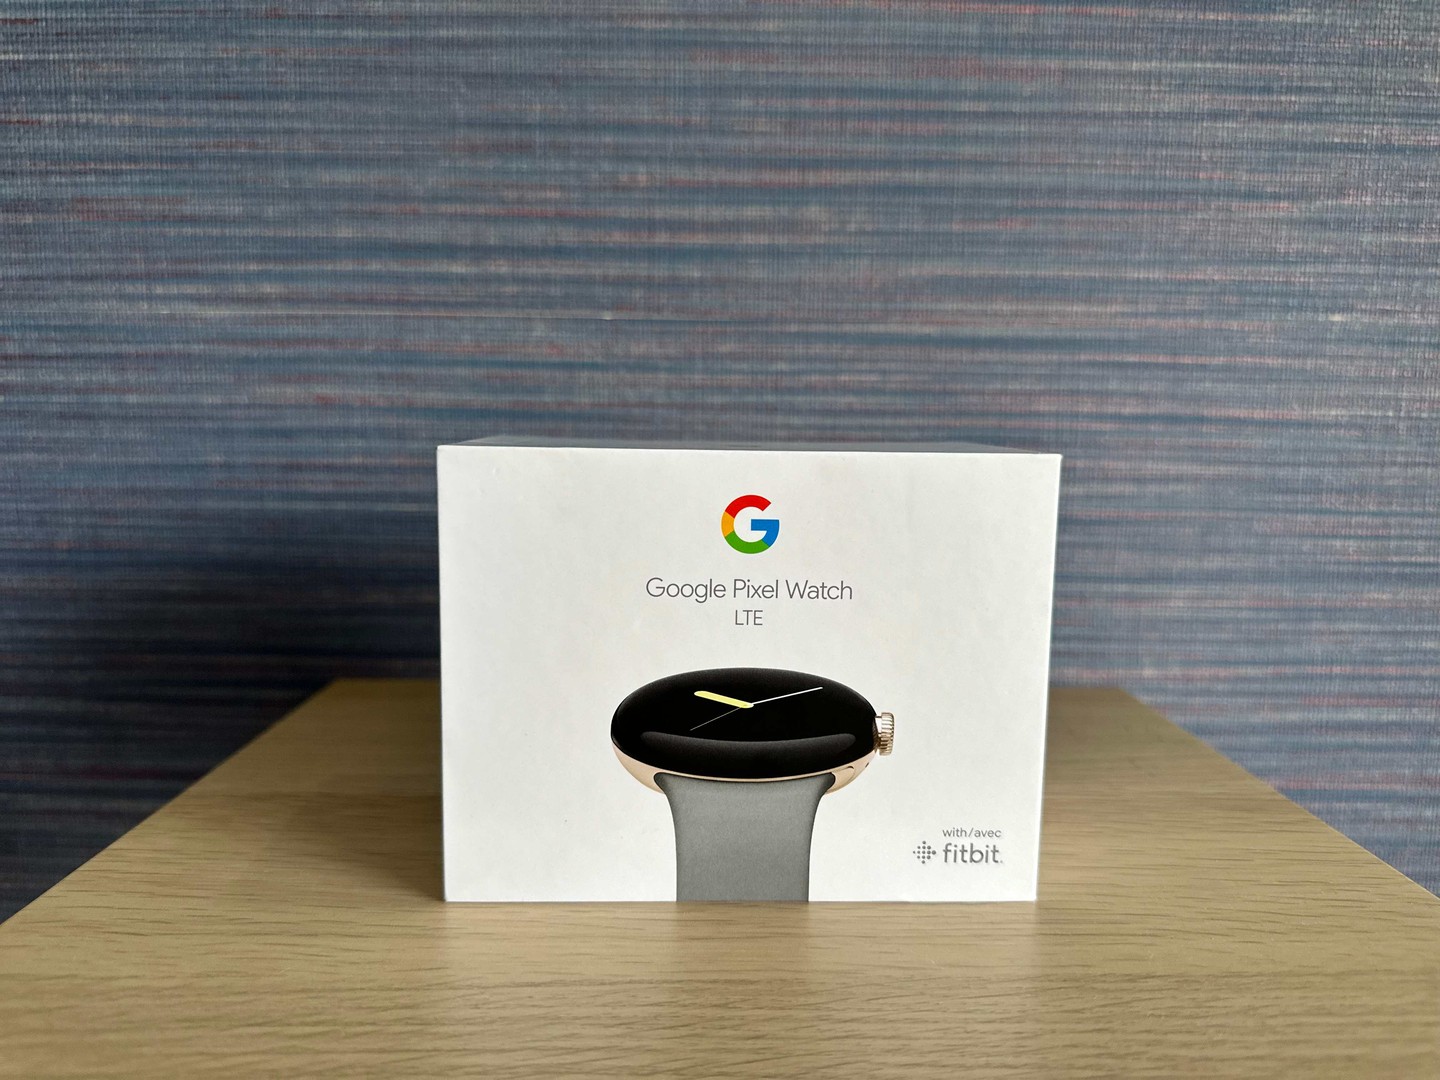 accesorios para electronica - Vendo Google Pixel Watch LTE Nuevo Sellado/ TIENDA!!!